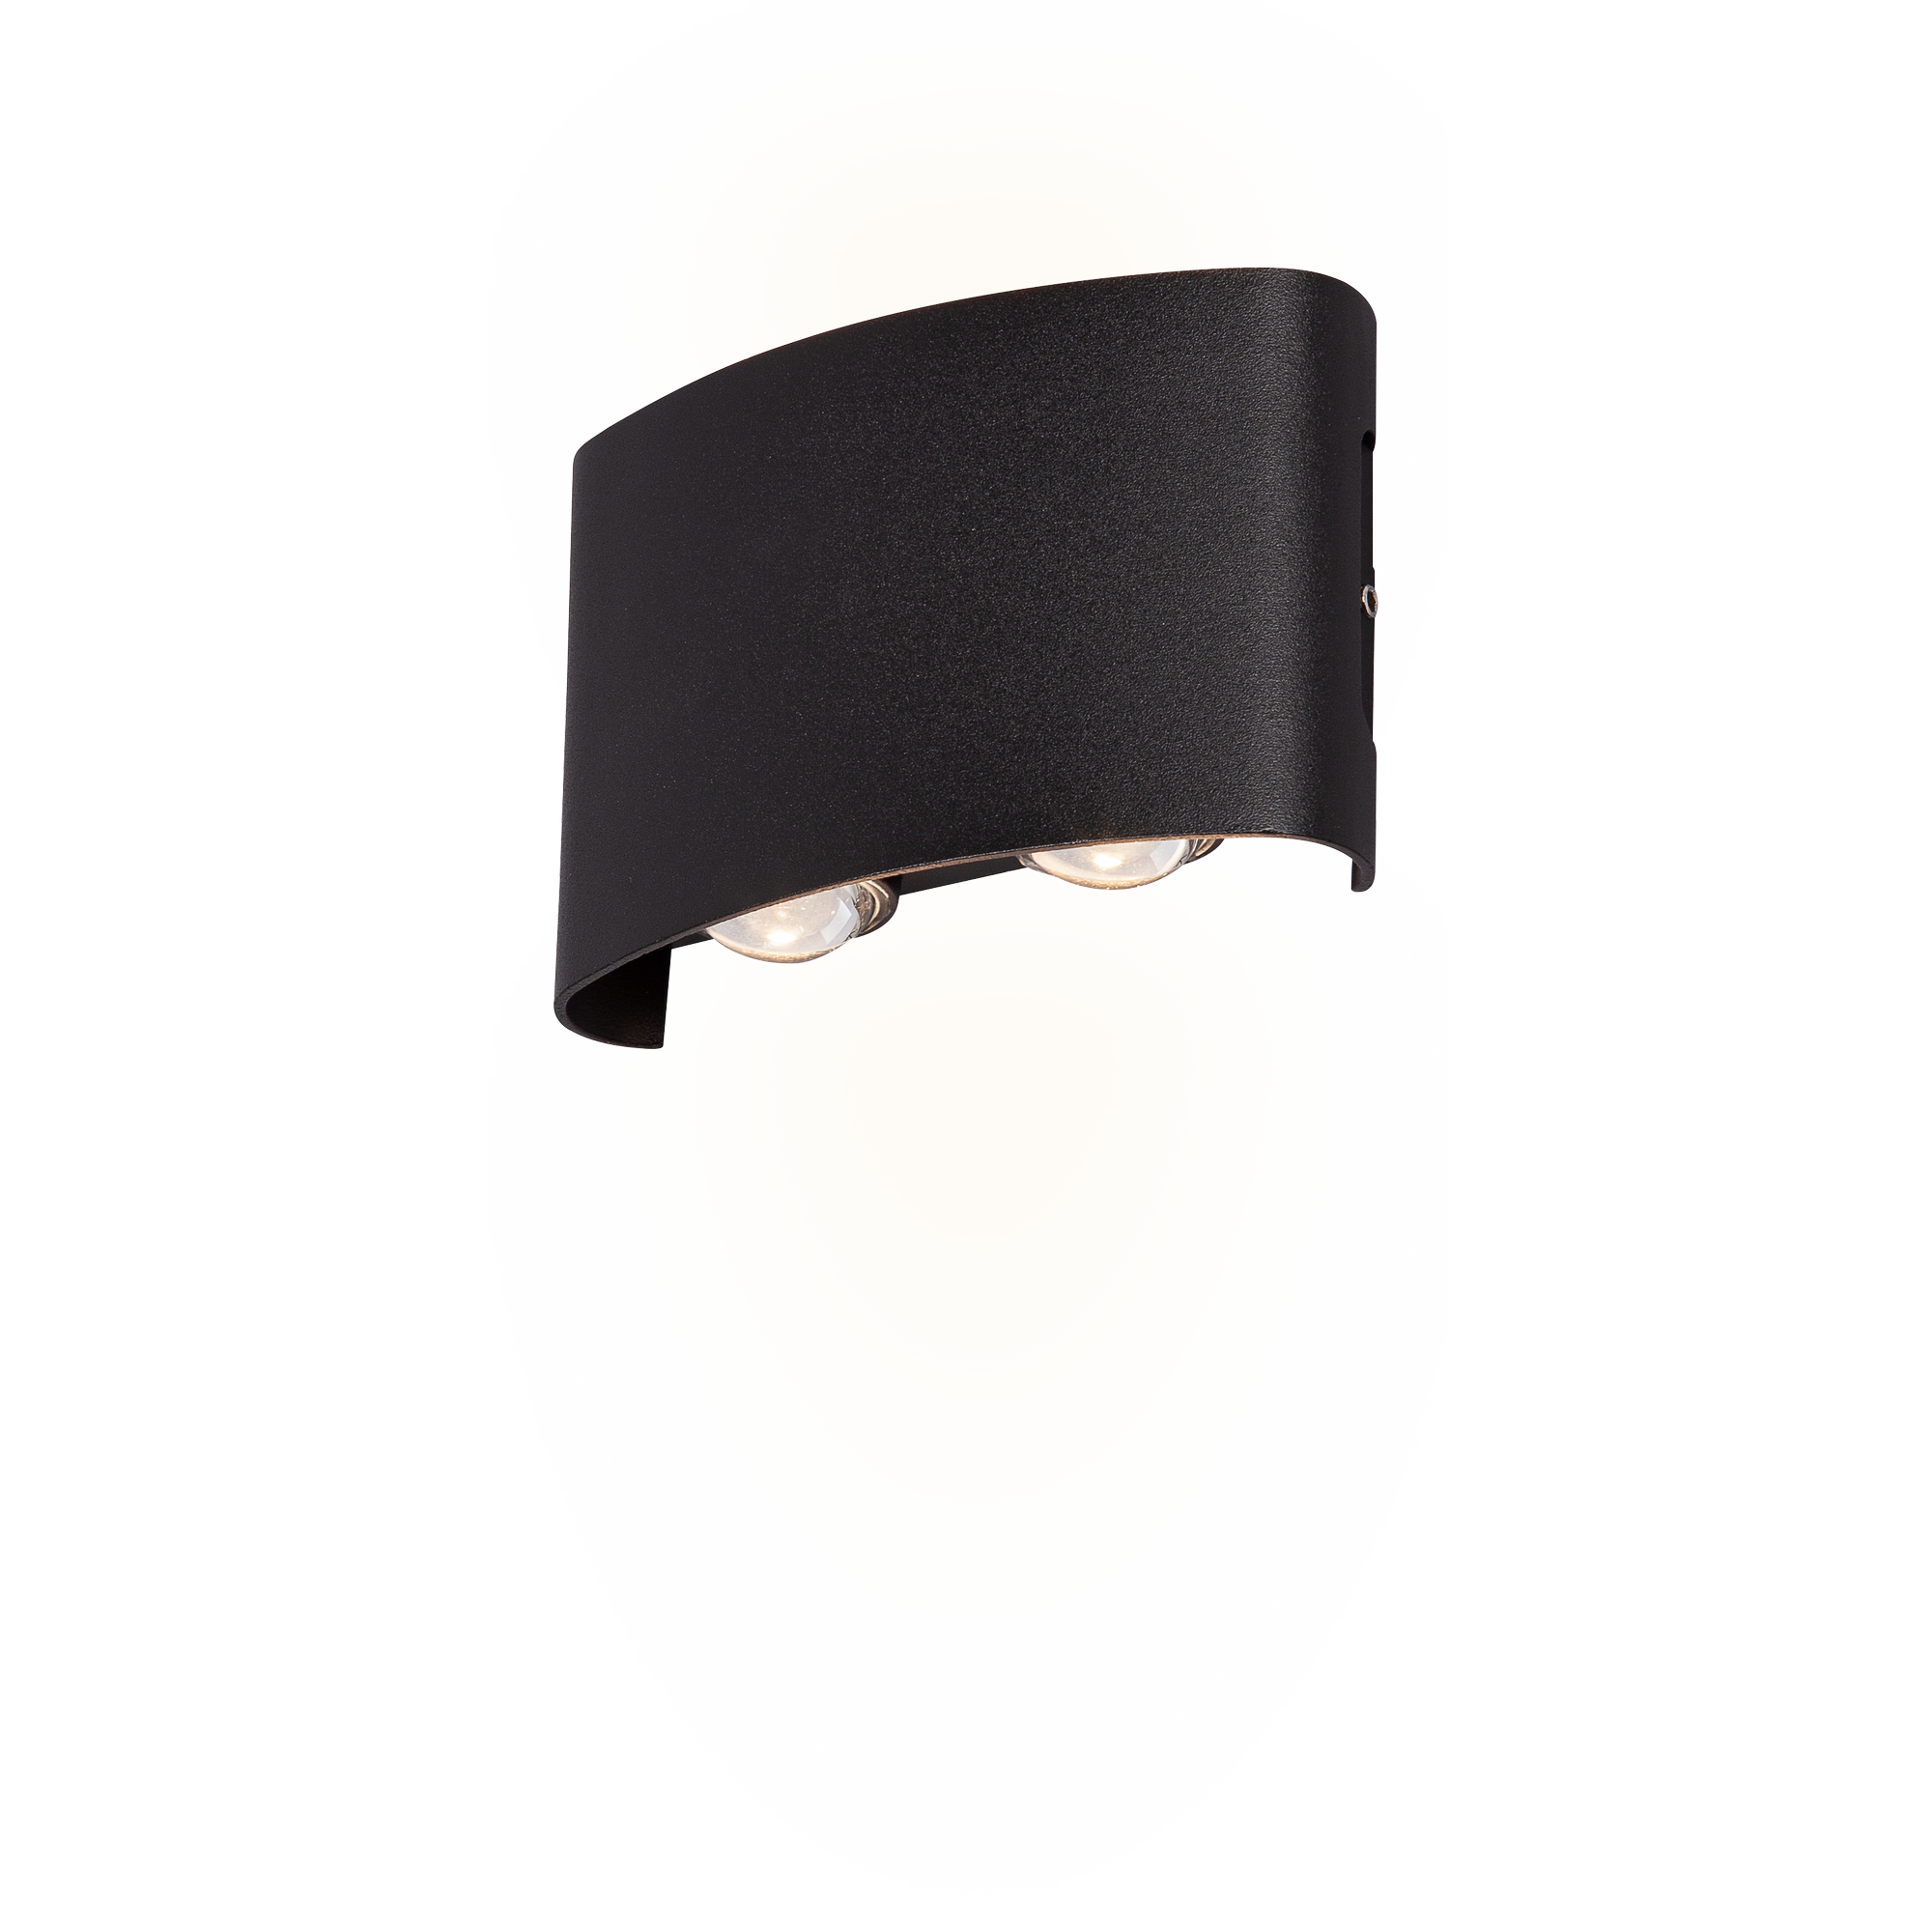 LED-Außenwandleuchte 'Toronto' schwarz halbrund 4 x 12 x 8 cm + product picture